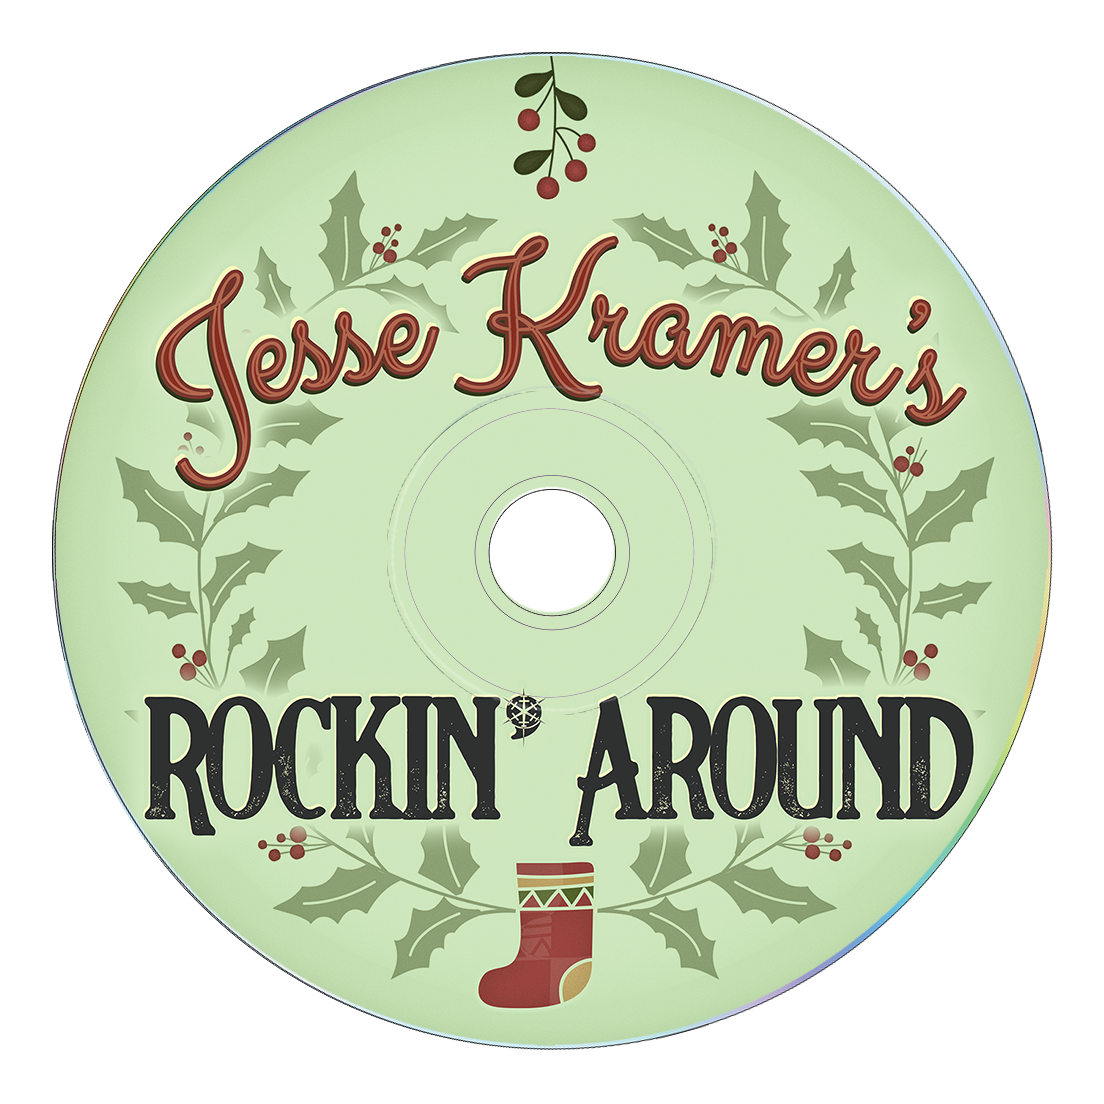 Jesse Kramer's Rockin' Around